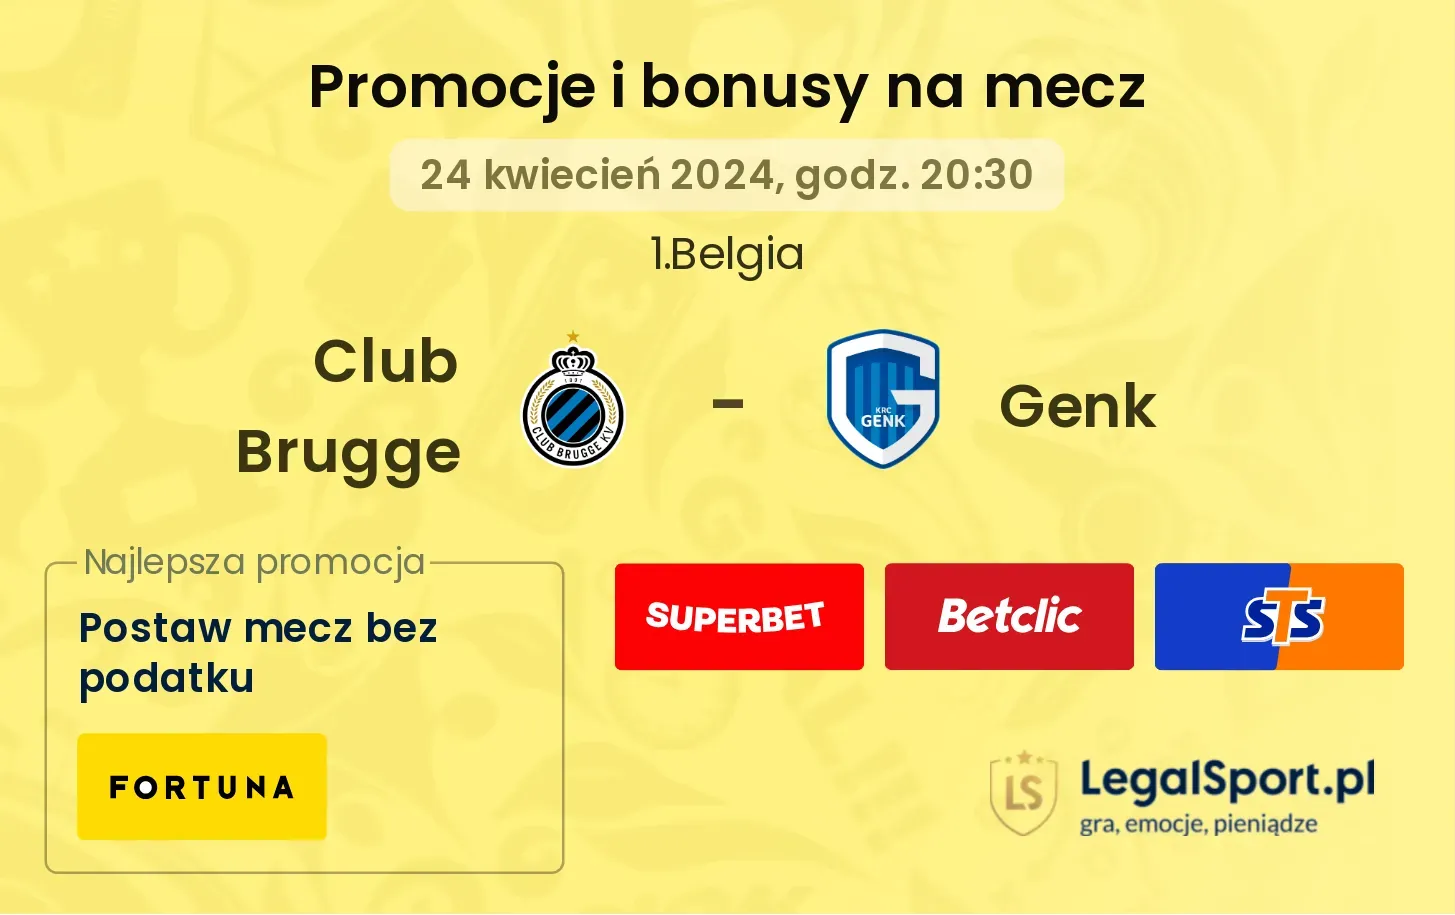 Club Brugge - Genk promocje bonusy na mecz